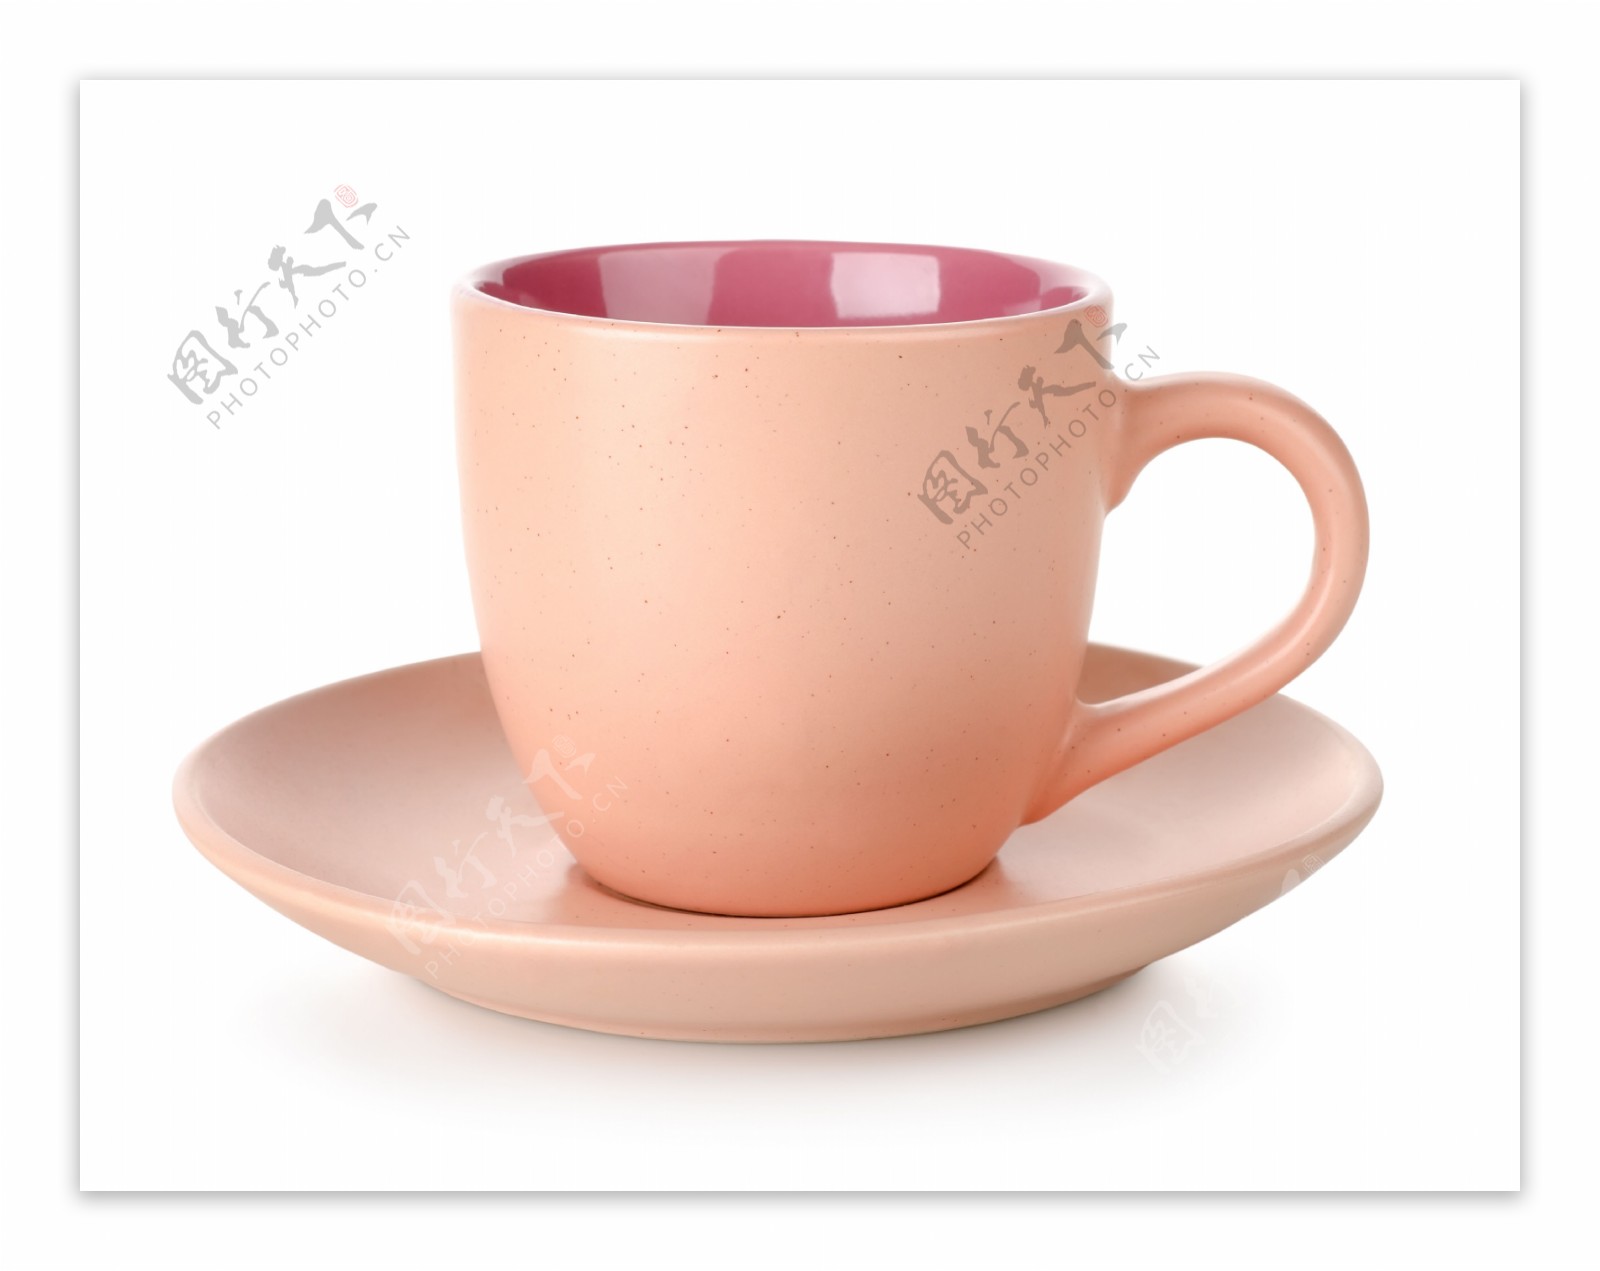 粉红色咖啡杯子图片